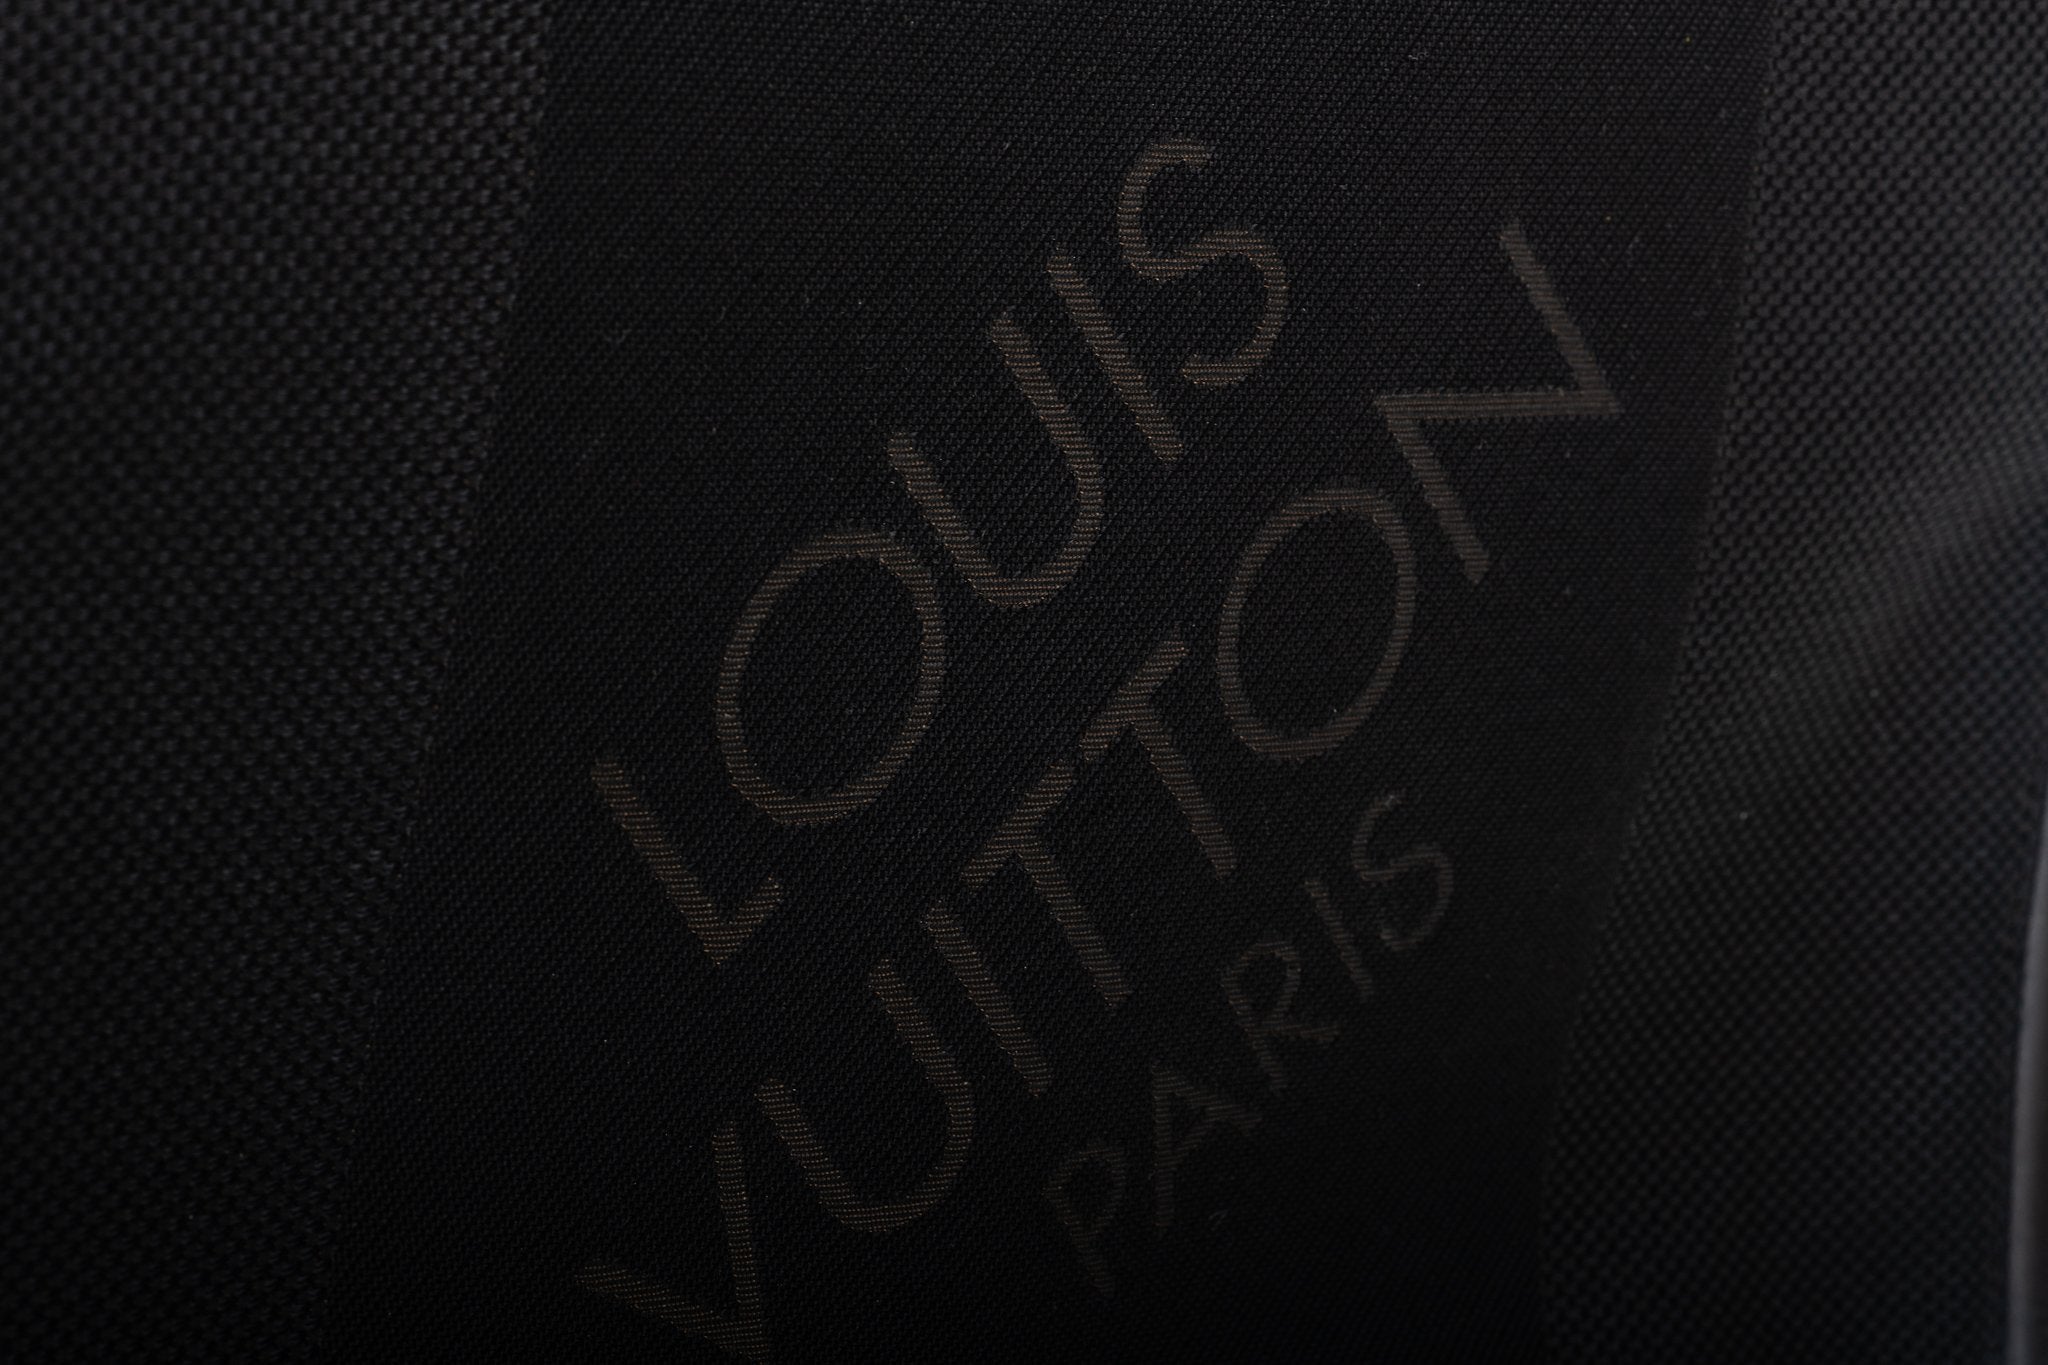 Vuitton Black Men's Computer Bag Large